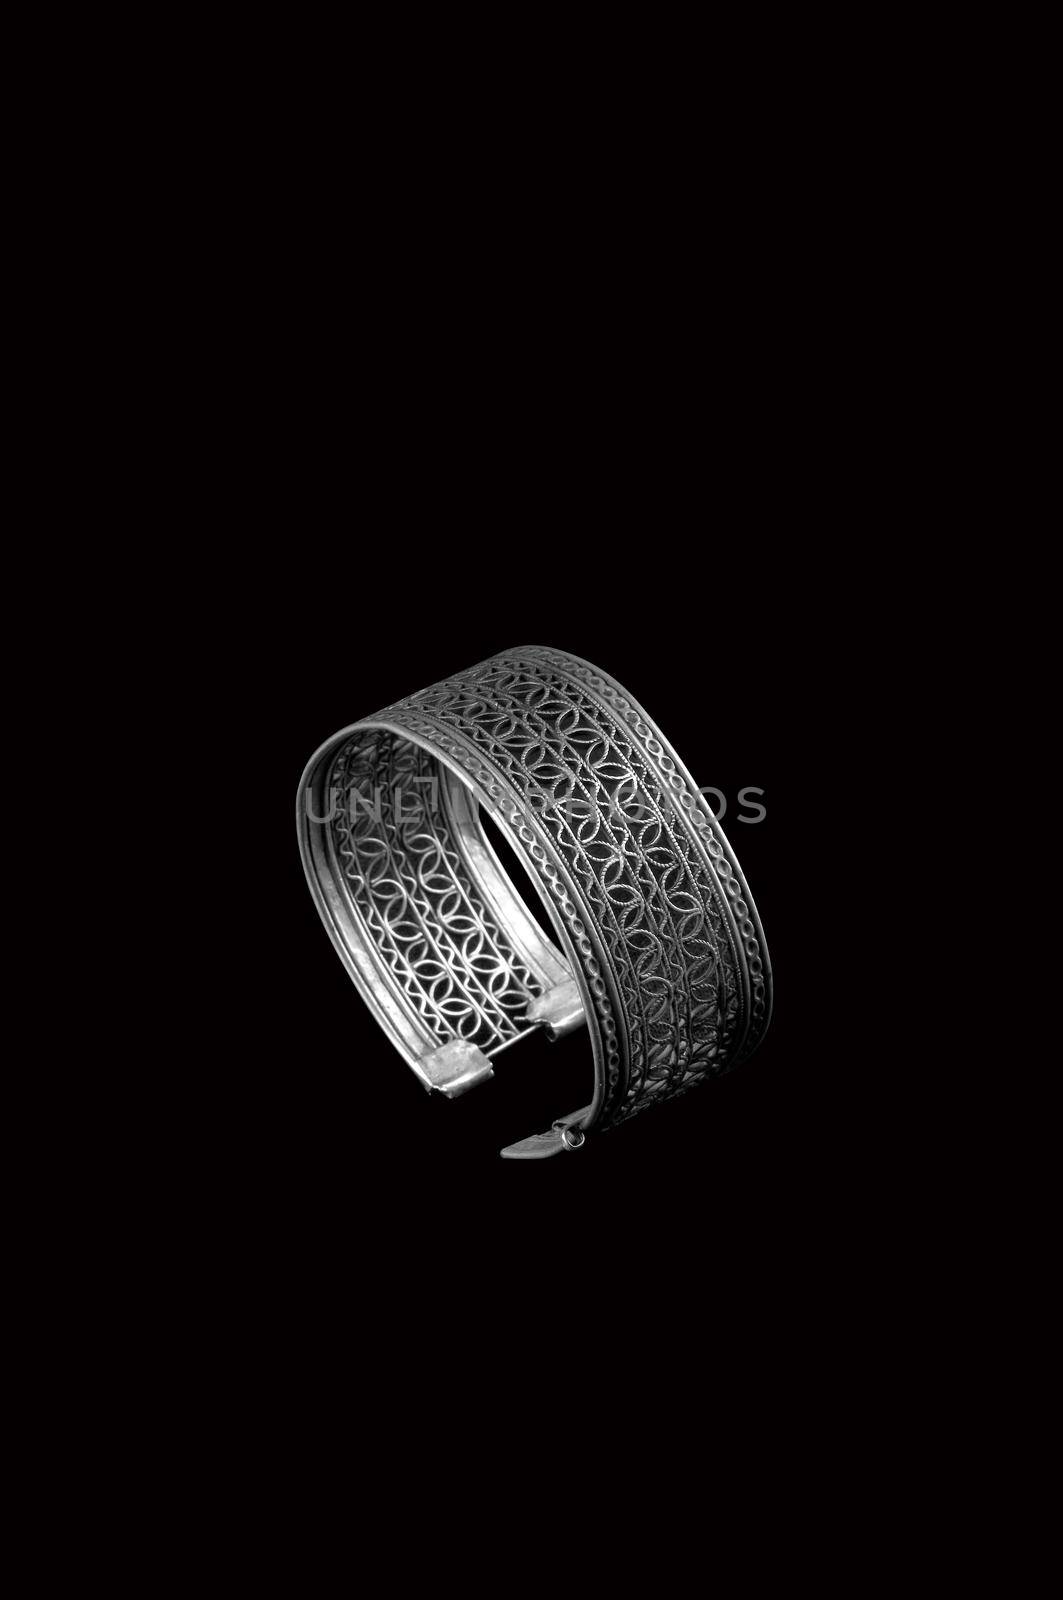 Vintage silver bracelet on black background